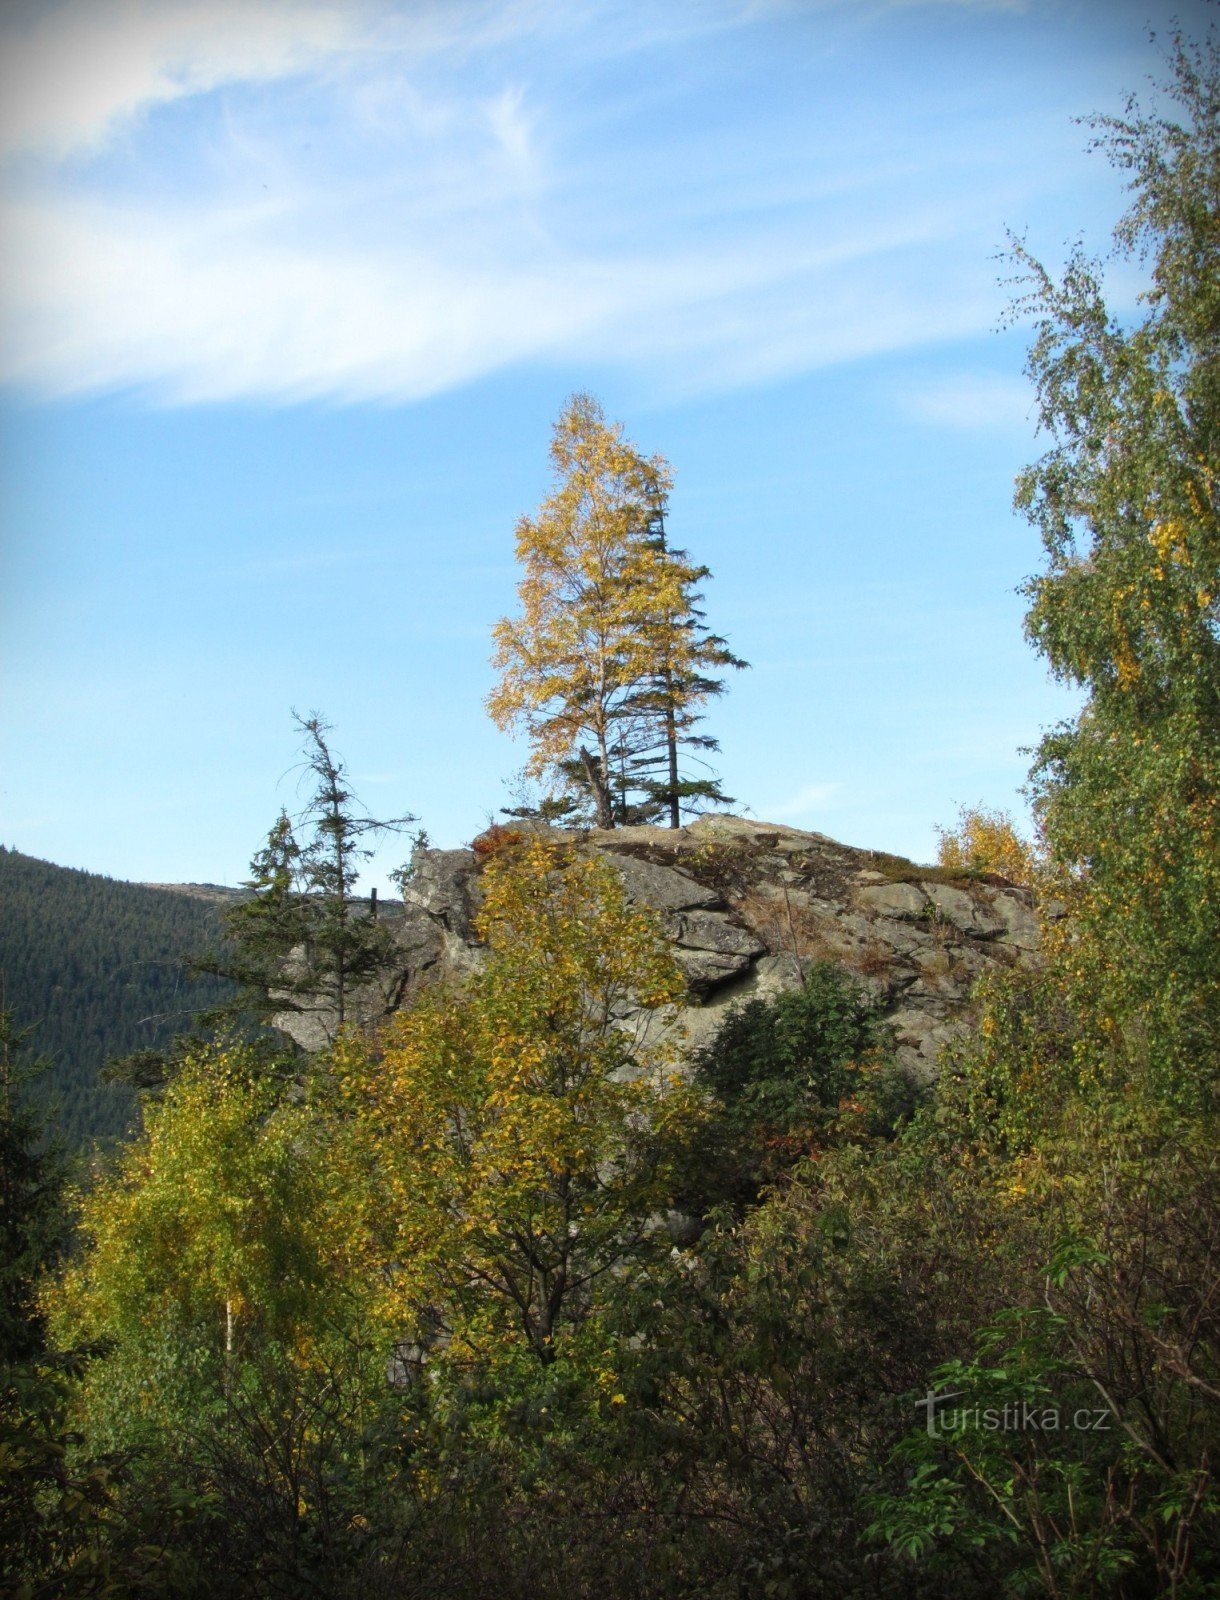 Kamzičí-rots boven de vallei van Bílé potok - Jeseníky-gebergte